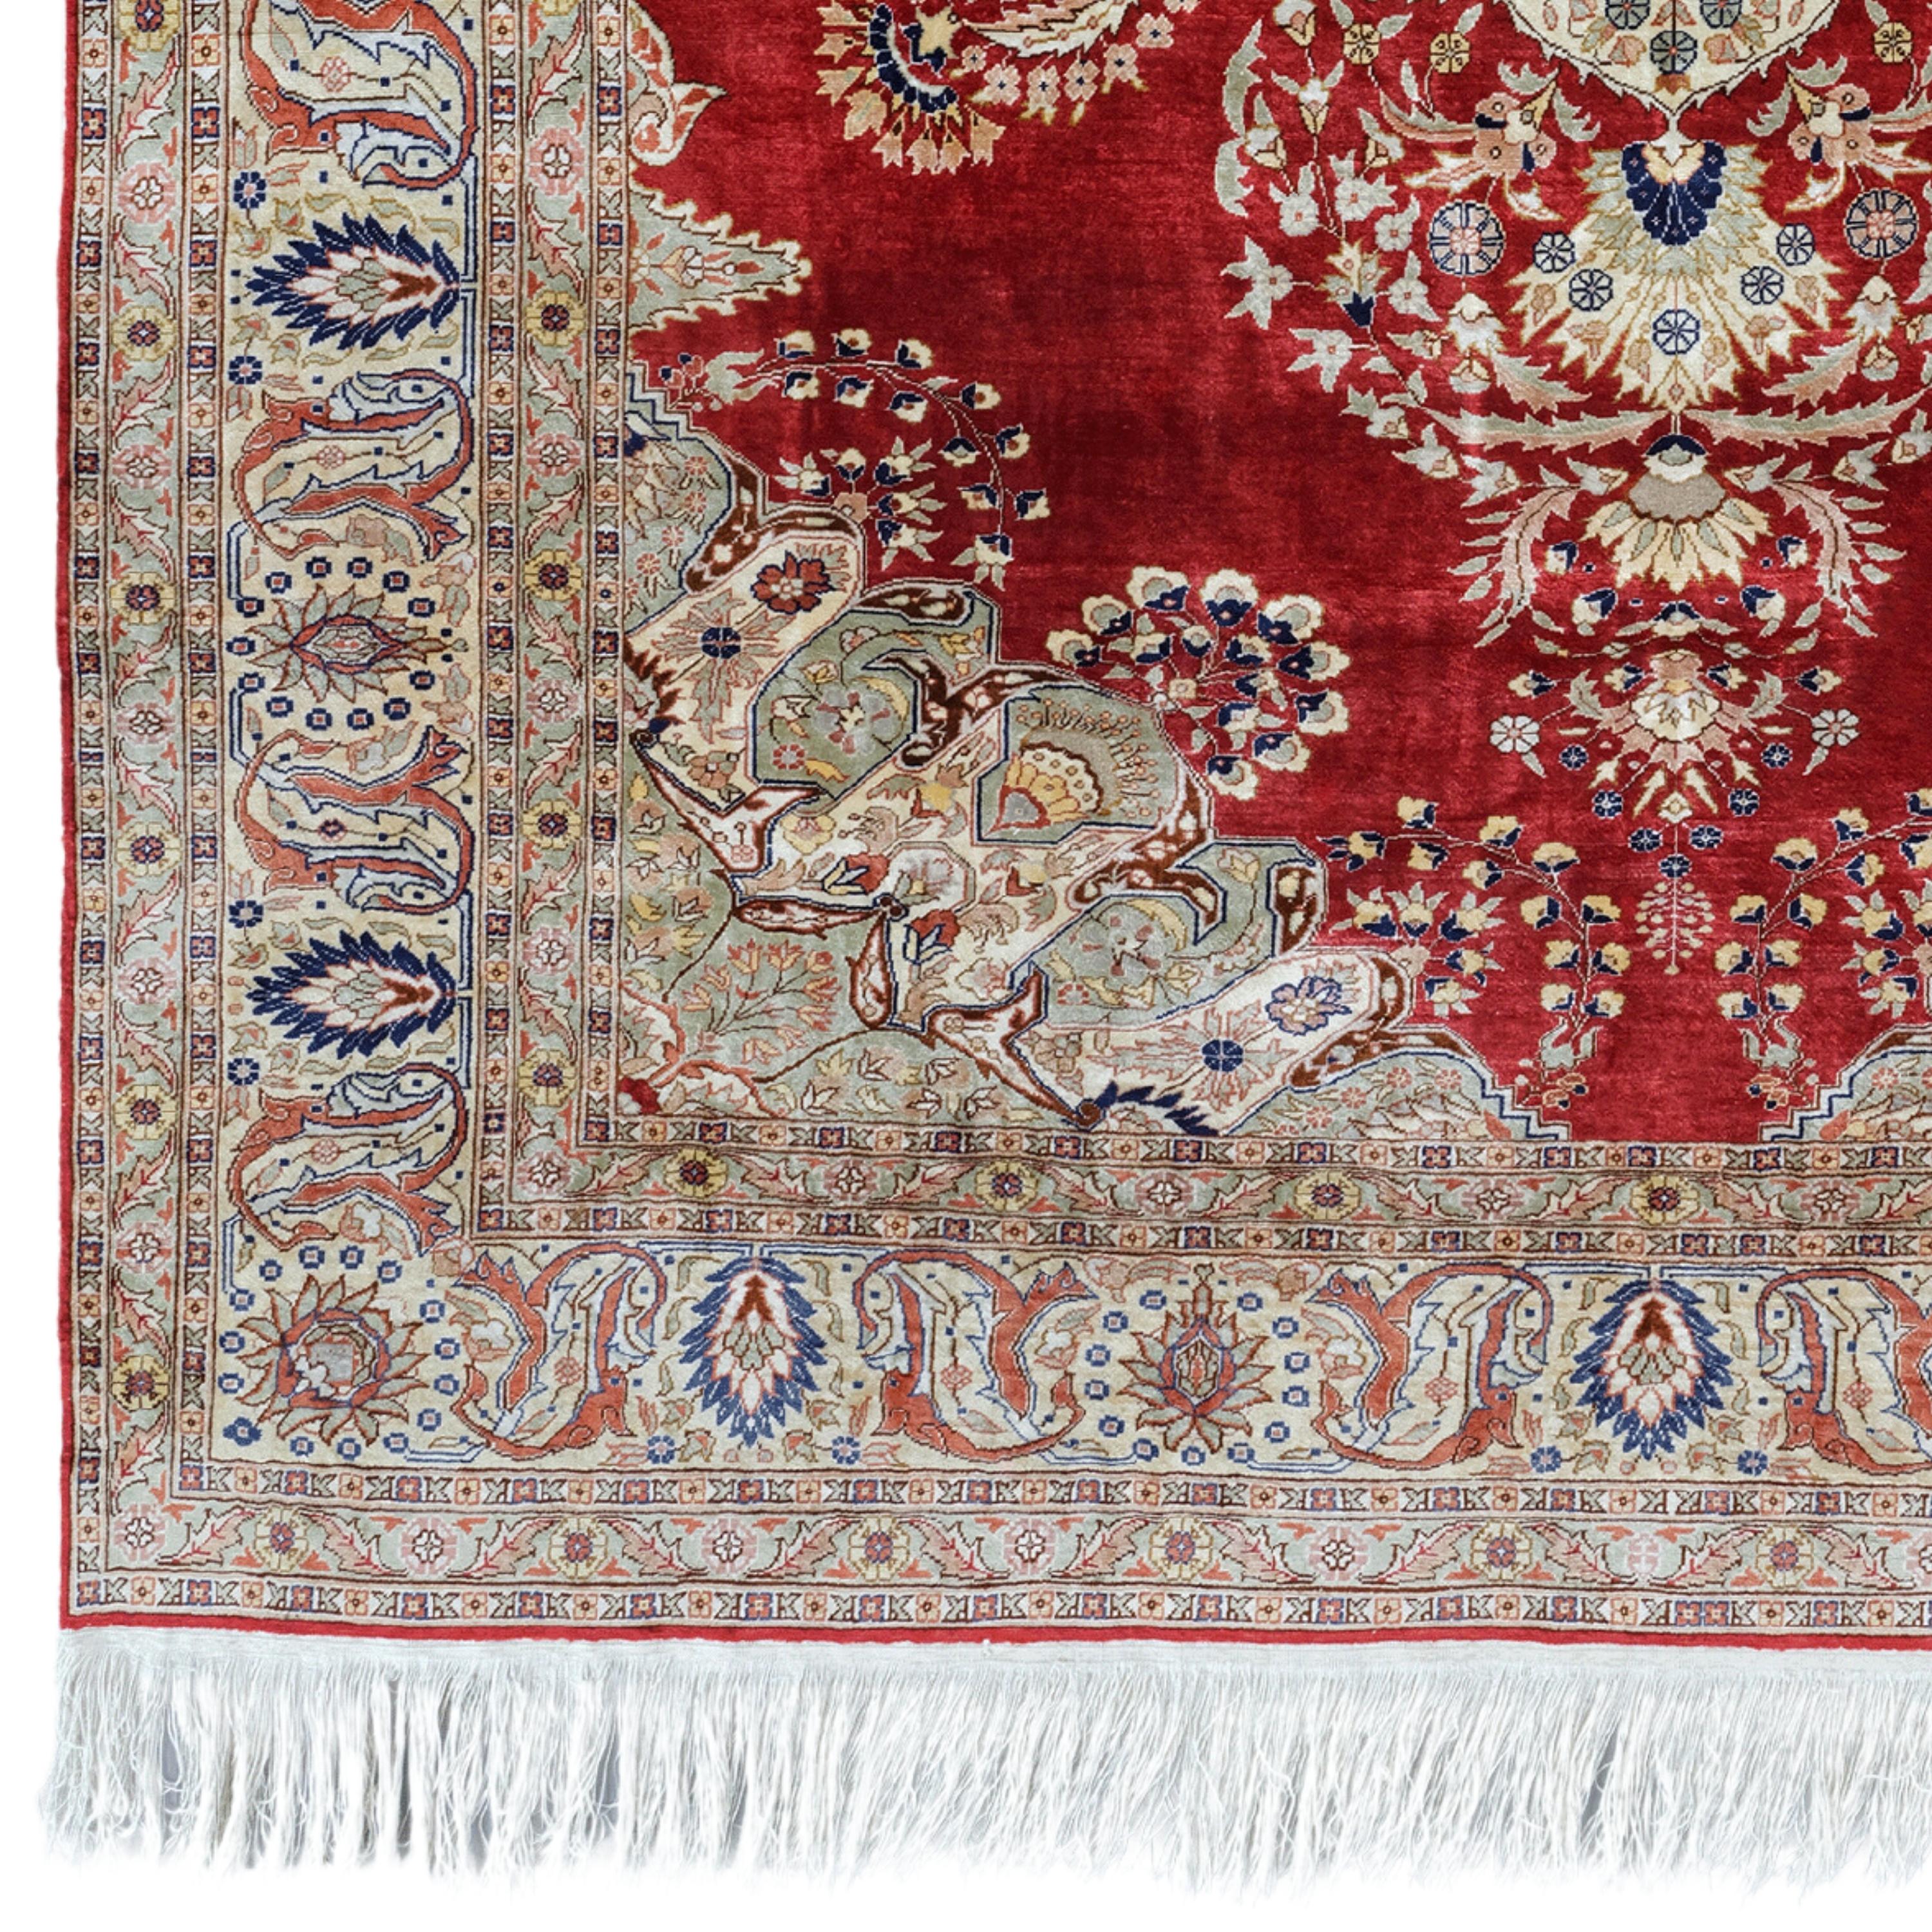 Die Kunst der eleganten Berührung Dieser antike Kayseri-Seidenteppich aus dem frühen 20. Jahrhundert besticht durch seine filigranen floralen und geometrischen Muster, die auf einem satten, tiefroten Hintergrund gestickt sind. Farben in Creme-,